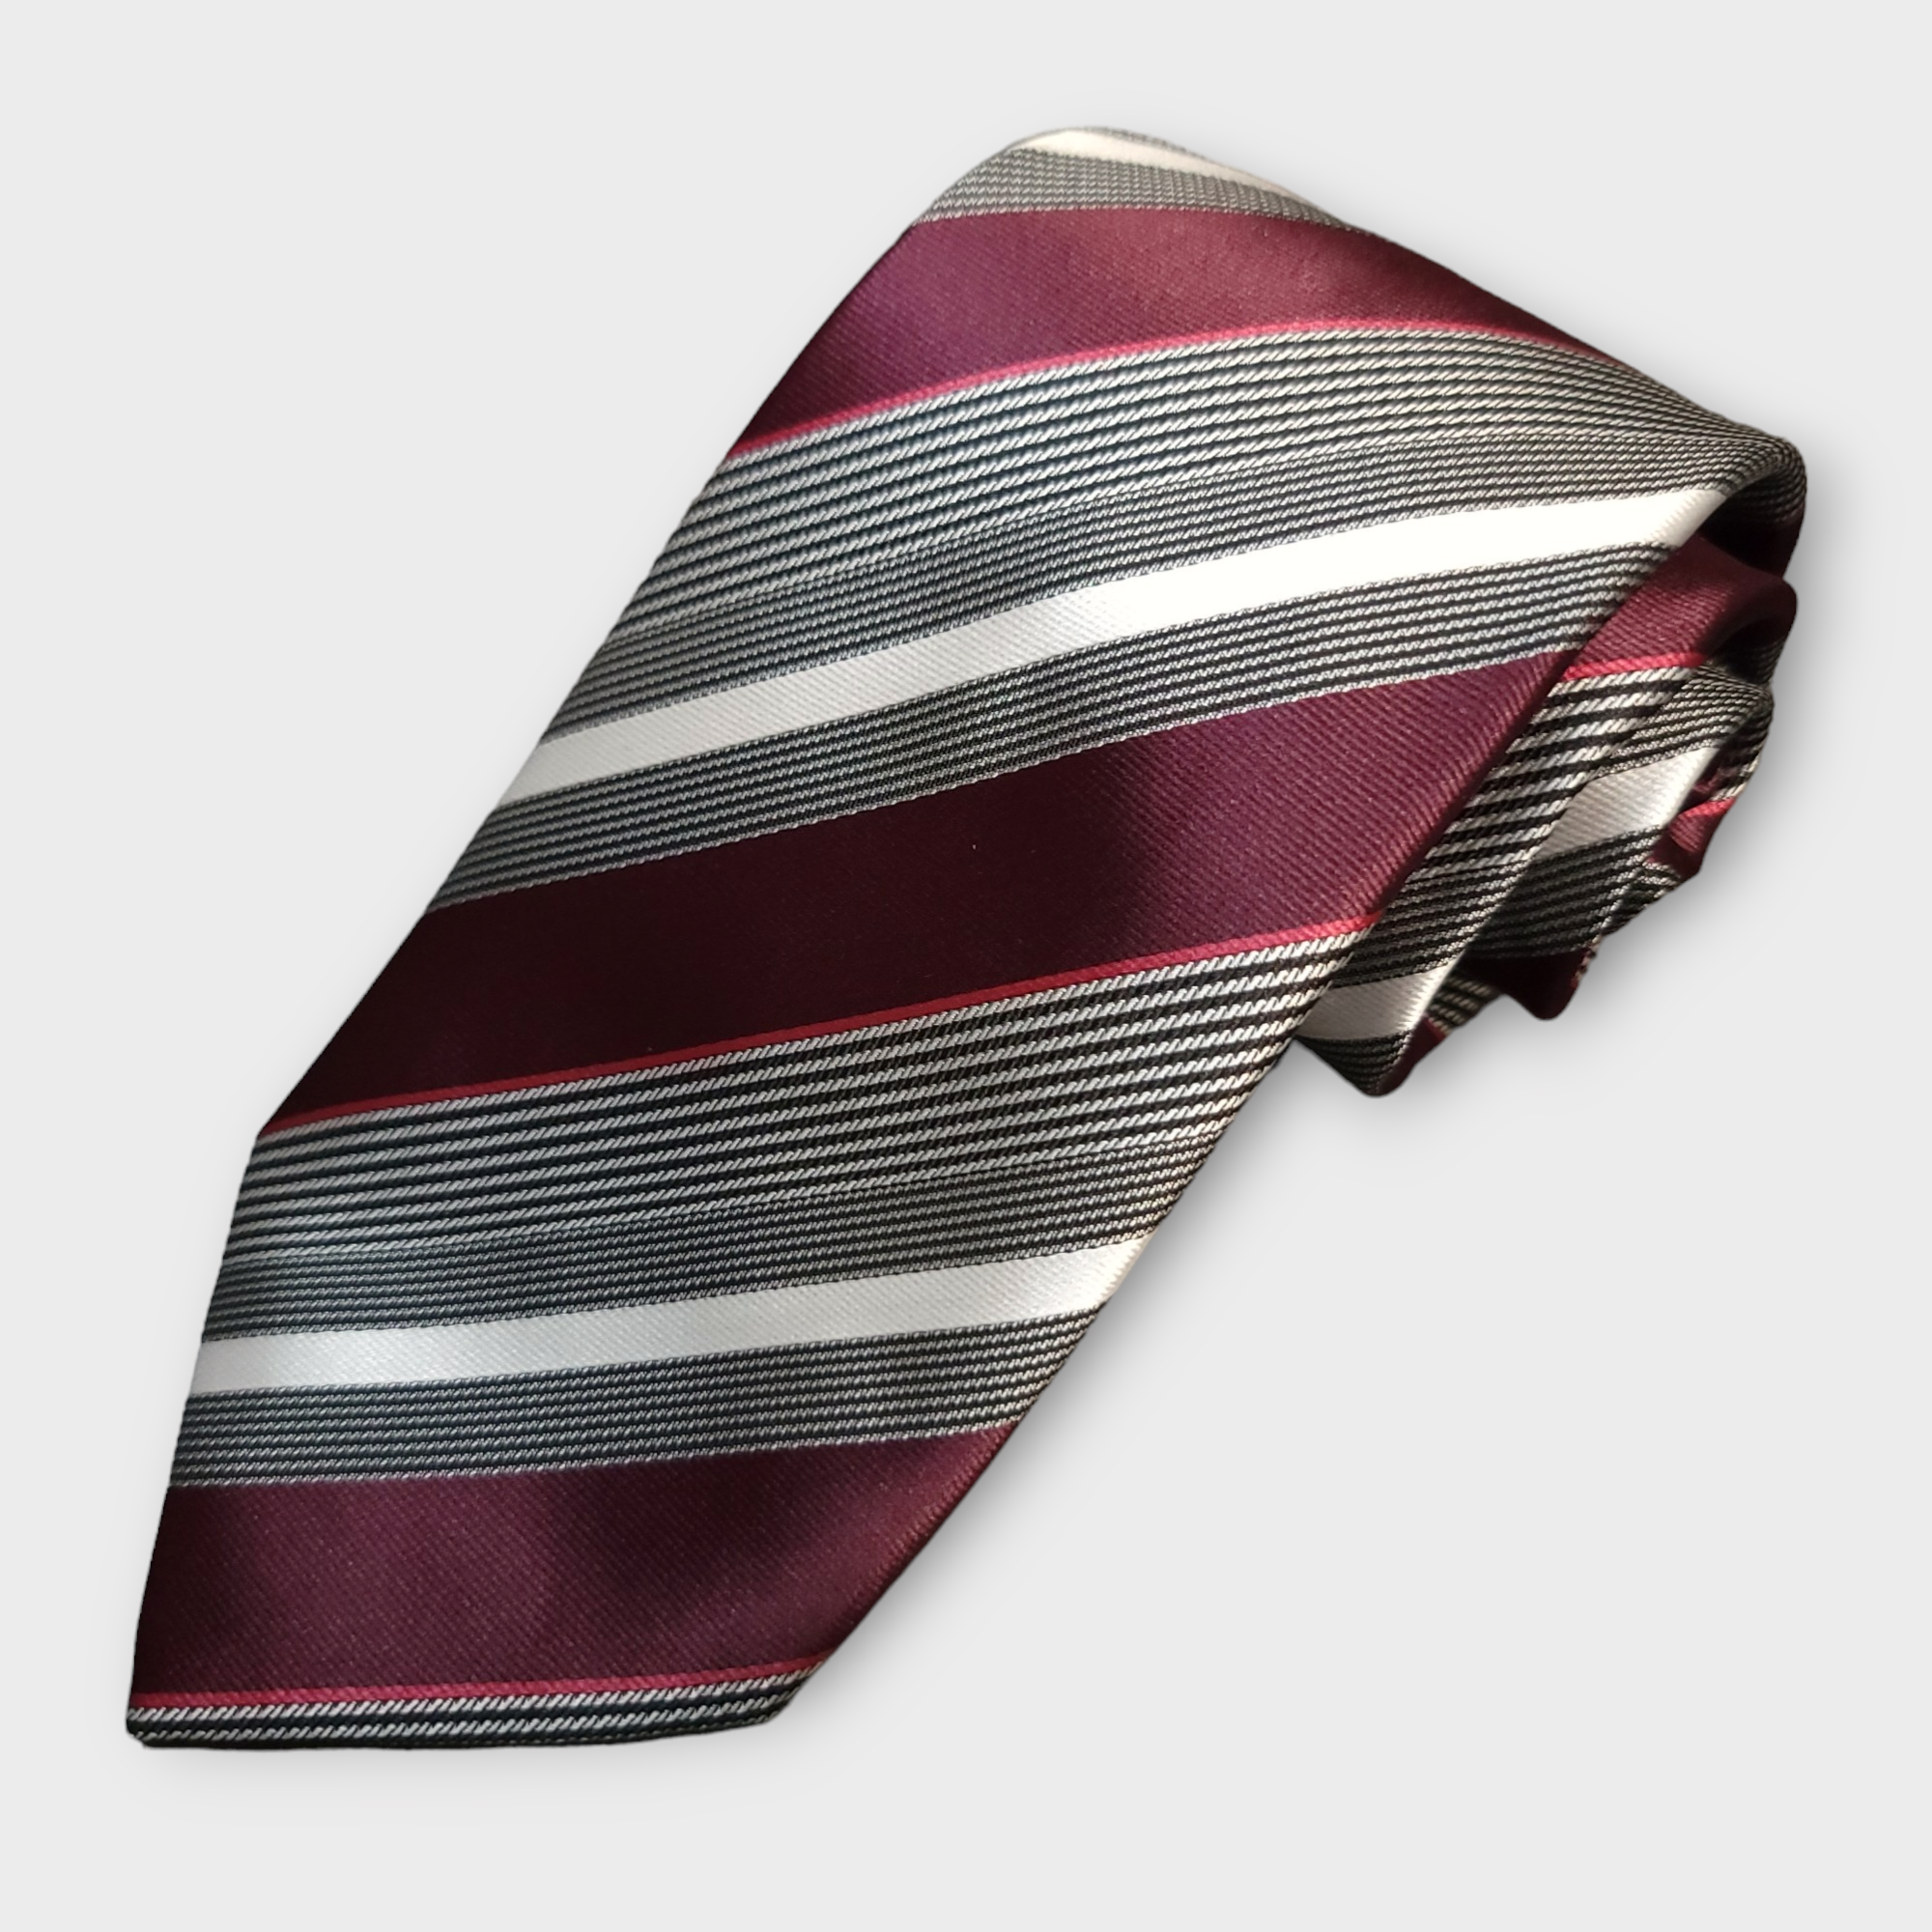 Striped Red Wine White Silk Tie Pocket Square Cufflinks Set